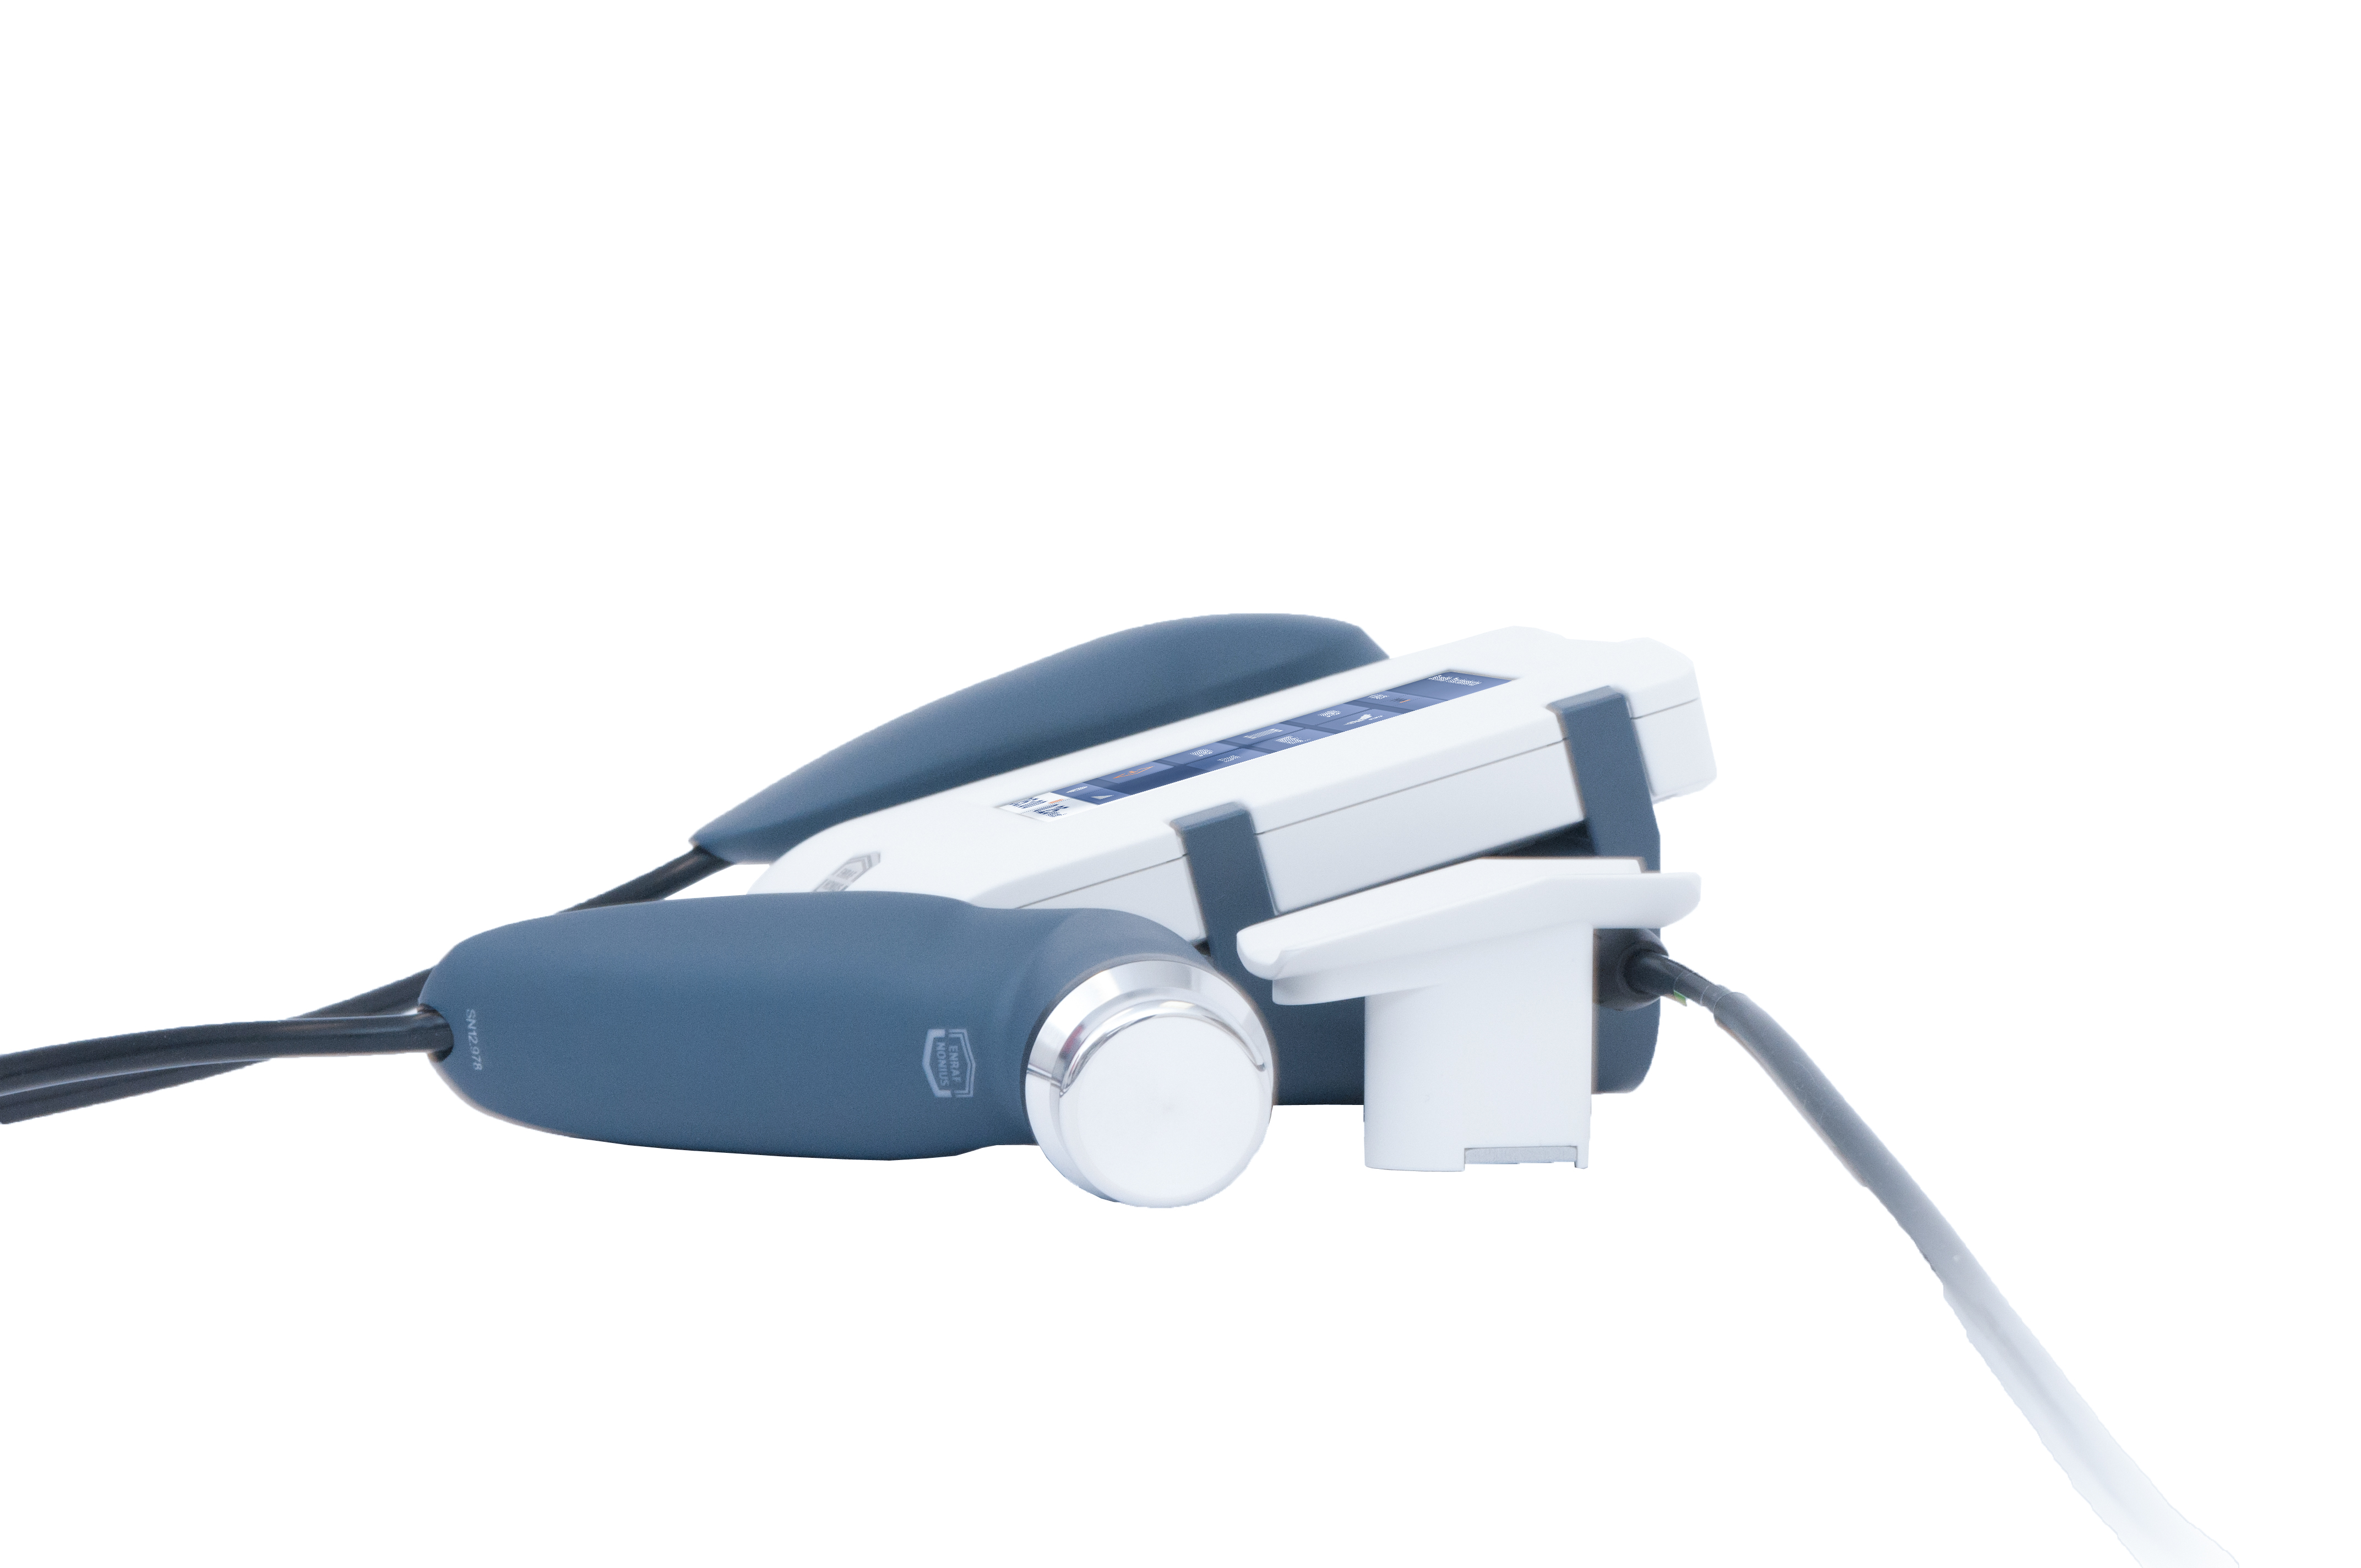 Аппарат ультразвуковой терапии Sonopuls 190 II  с маленькой УЗ головкой 0,8 см2